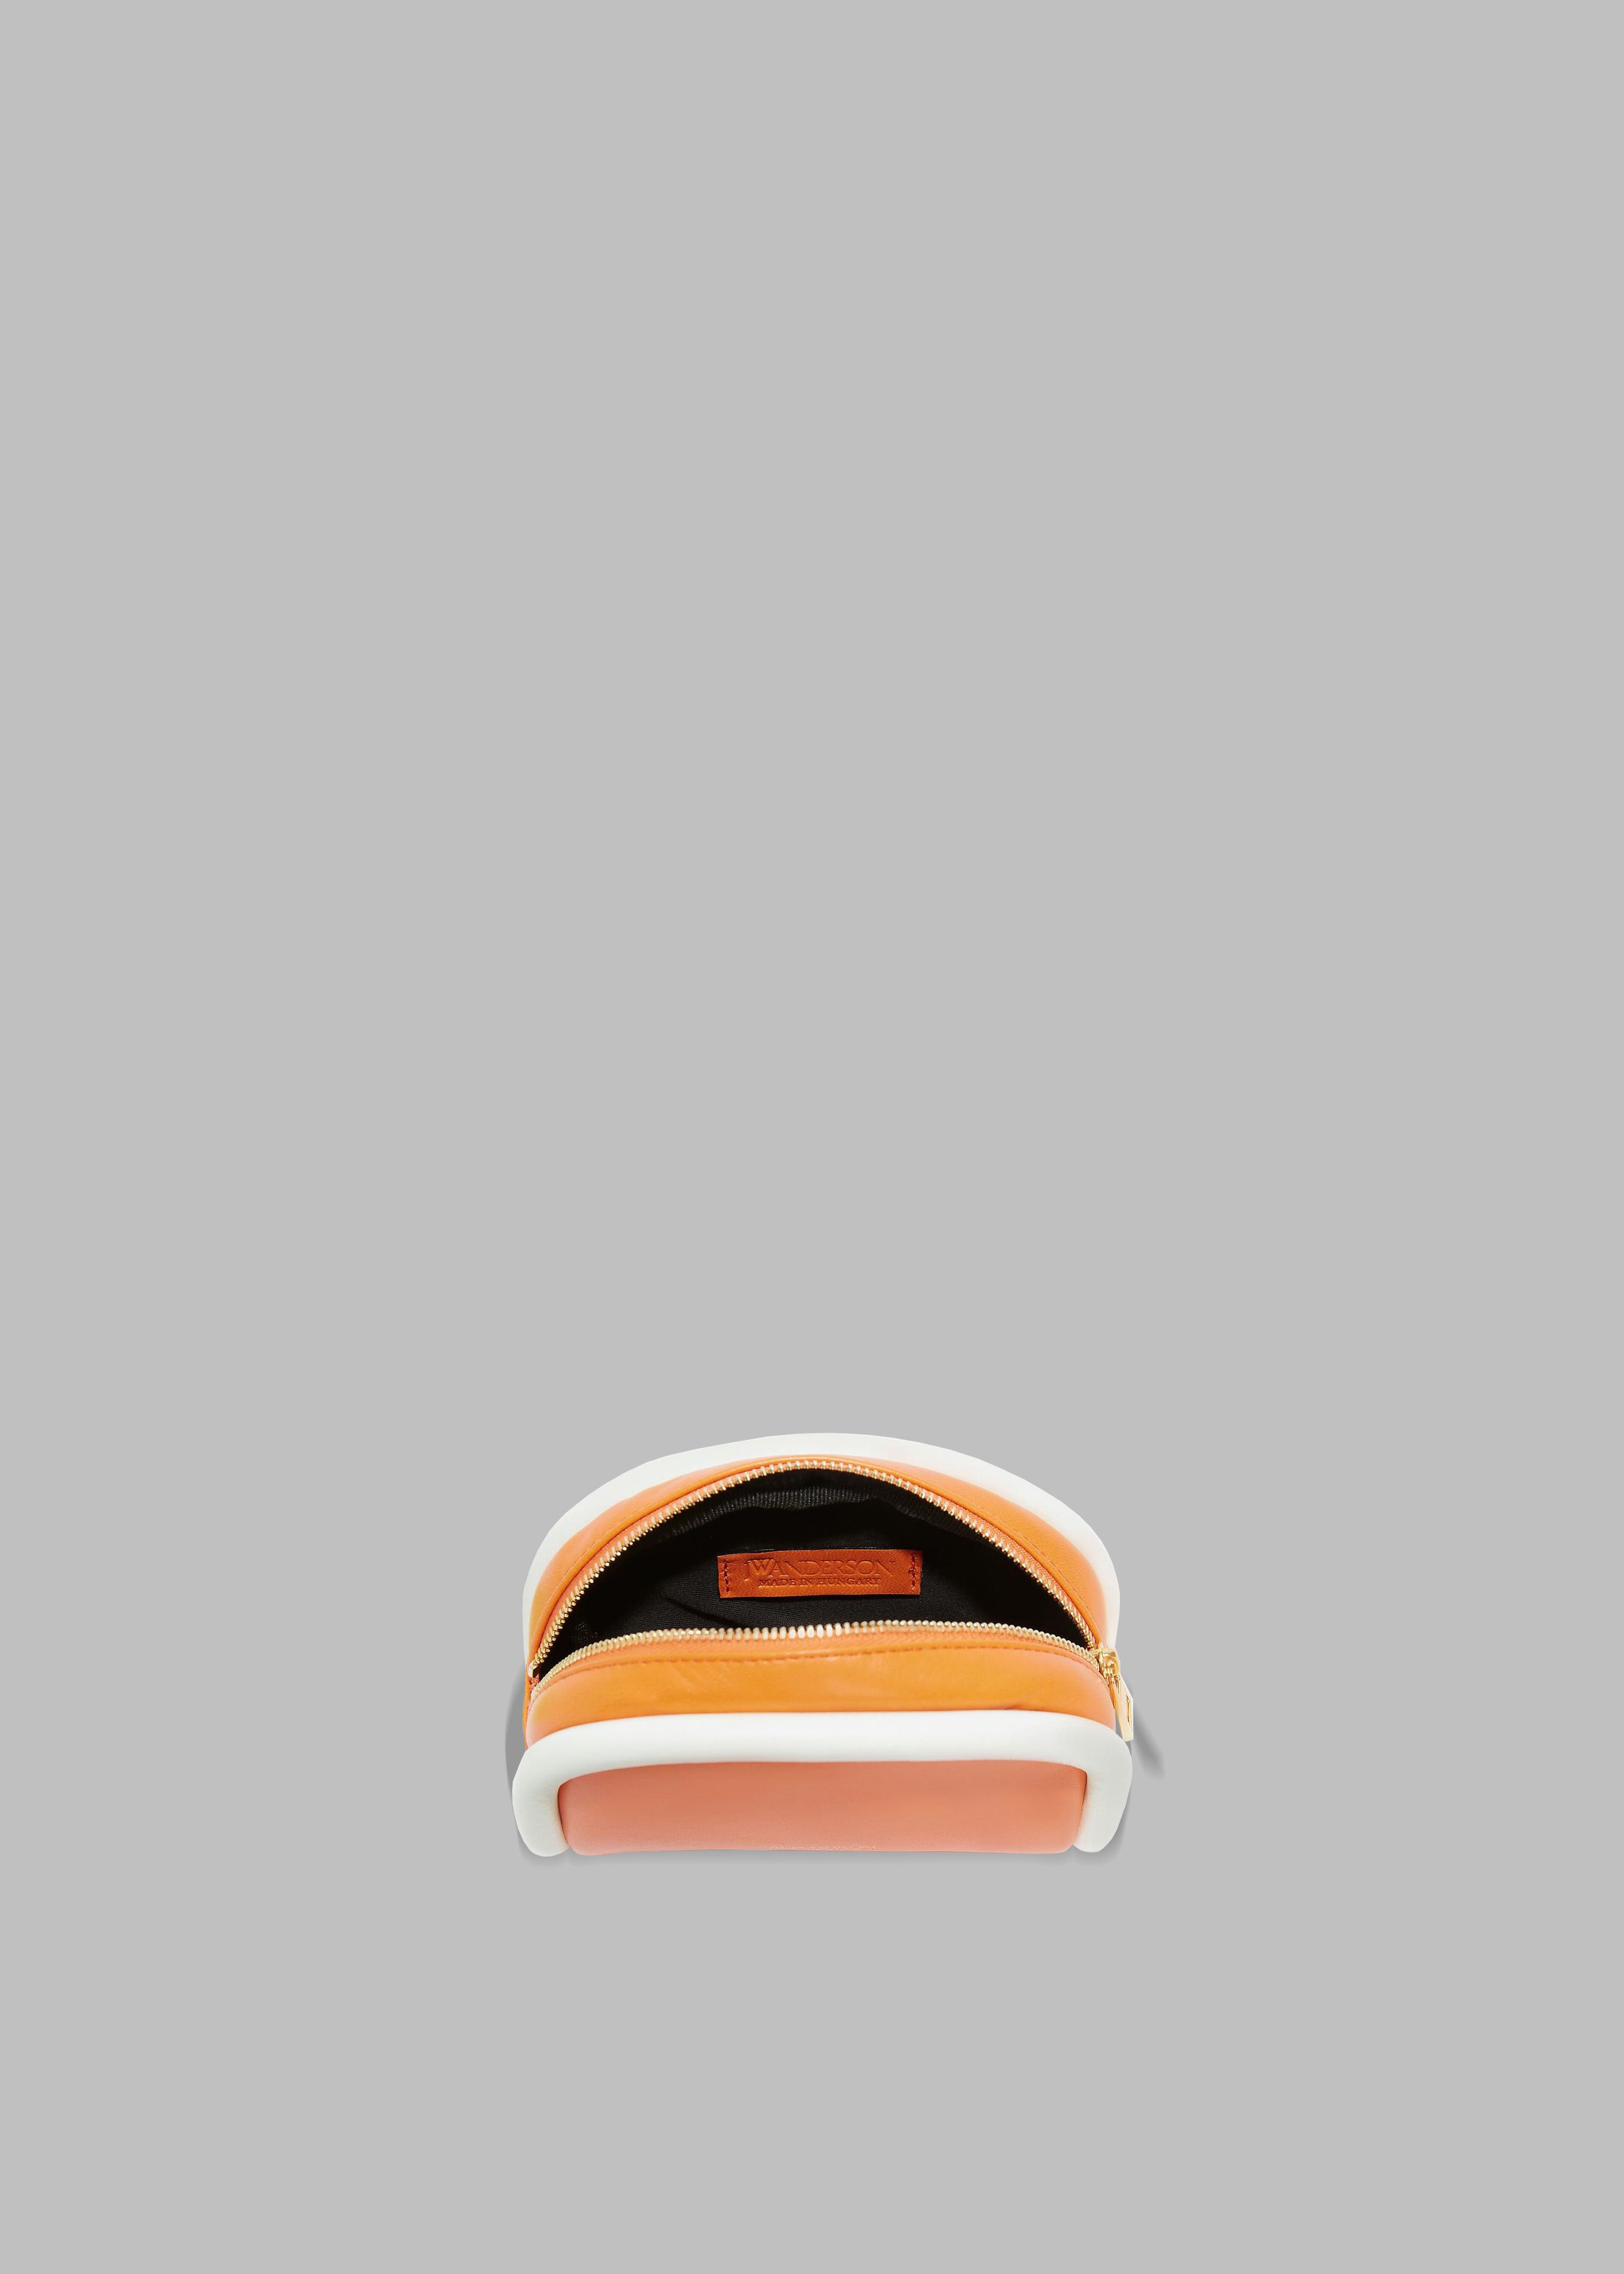 JW Anderson Small Leather Bumper-Pouch - Orange/White - 4